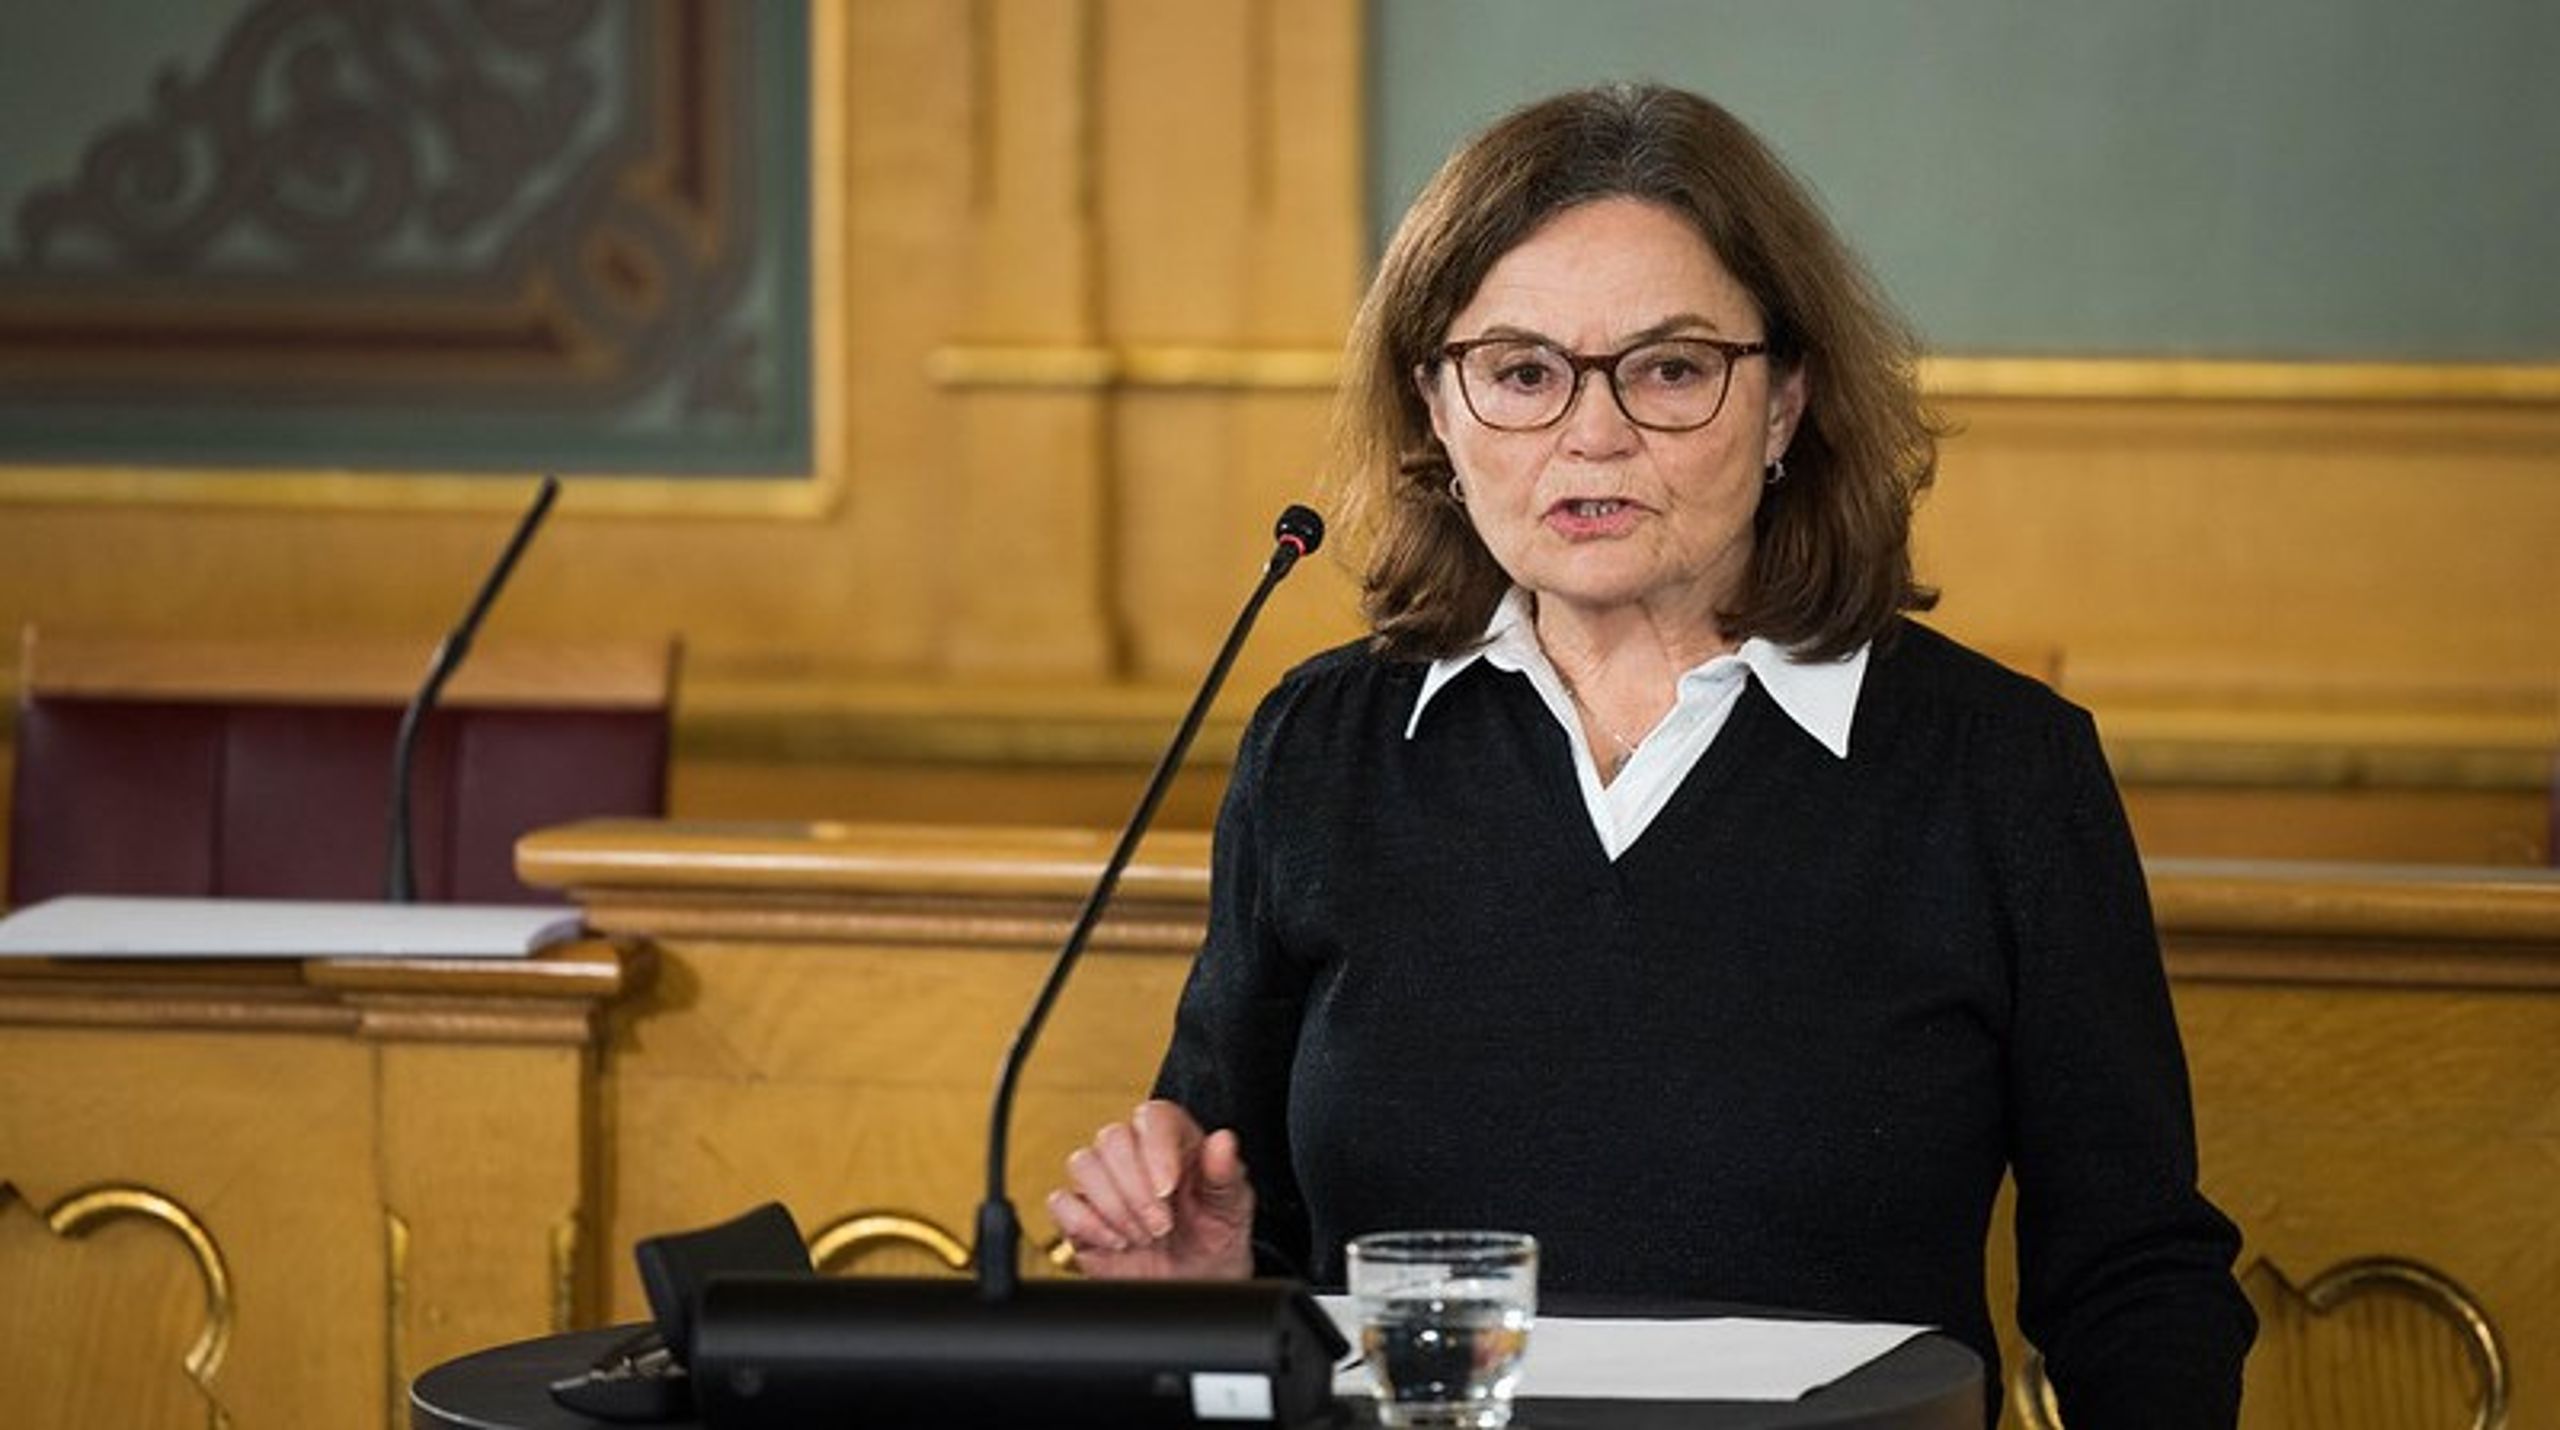 Therese Johnsen har ledet Utvalget for ekstern gjennomgang av økonomiske ordninger for stortingsrepresentanter. Tirsdag leverte hun utvalgets rapport til Stortinget.